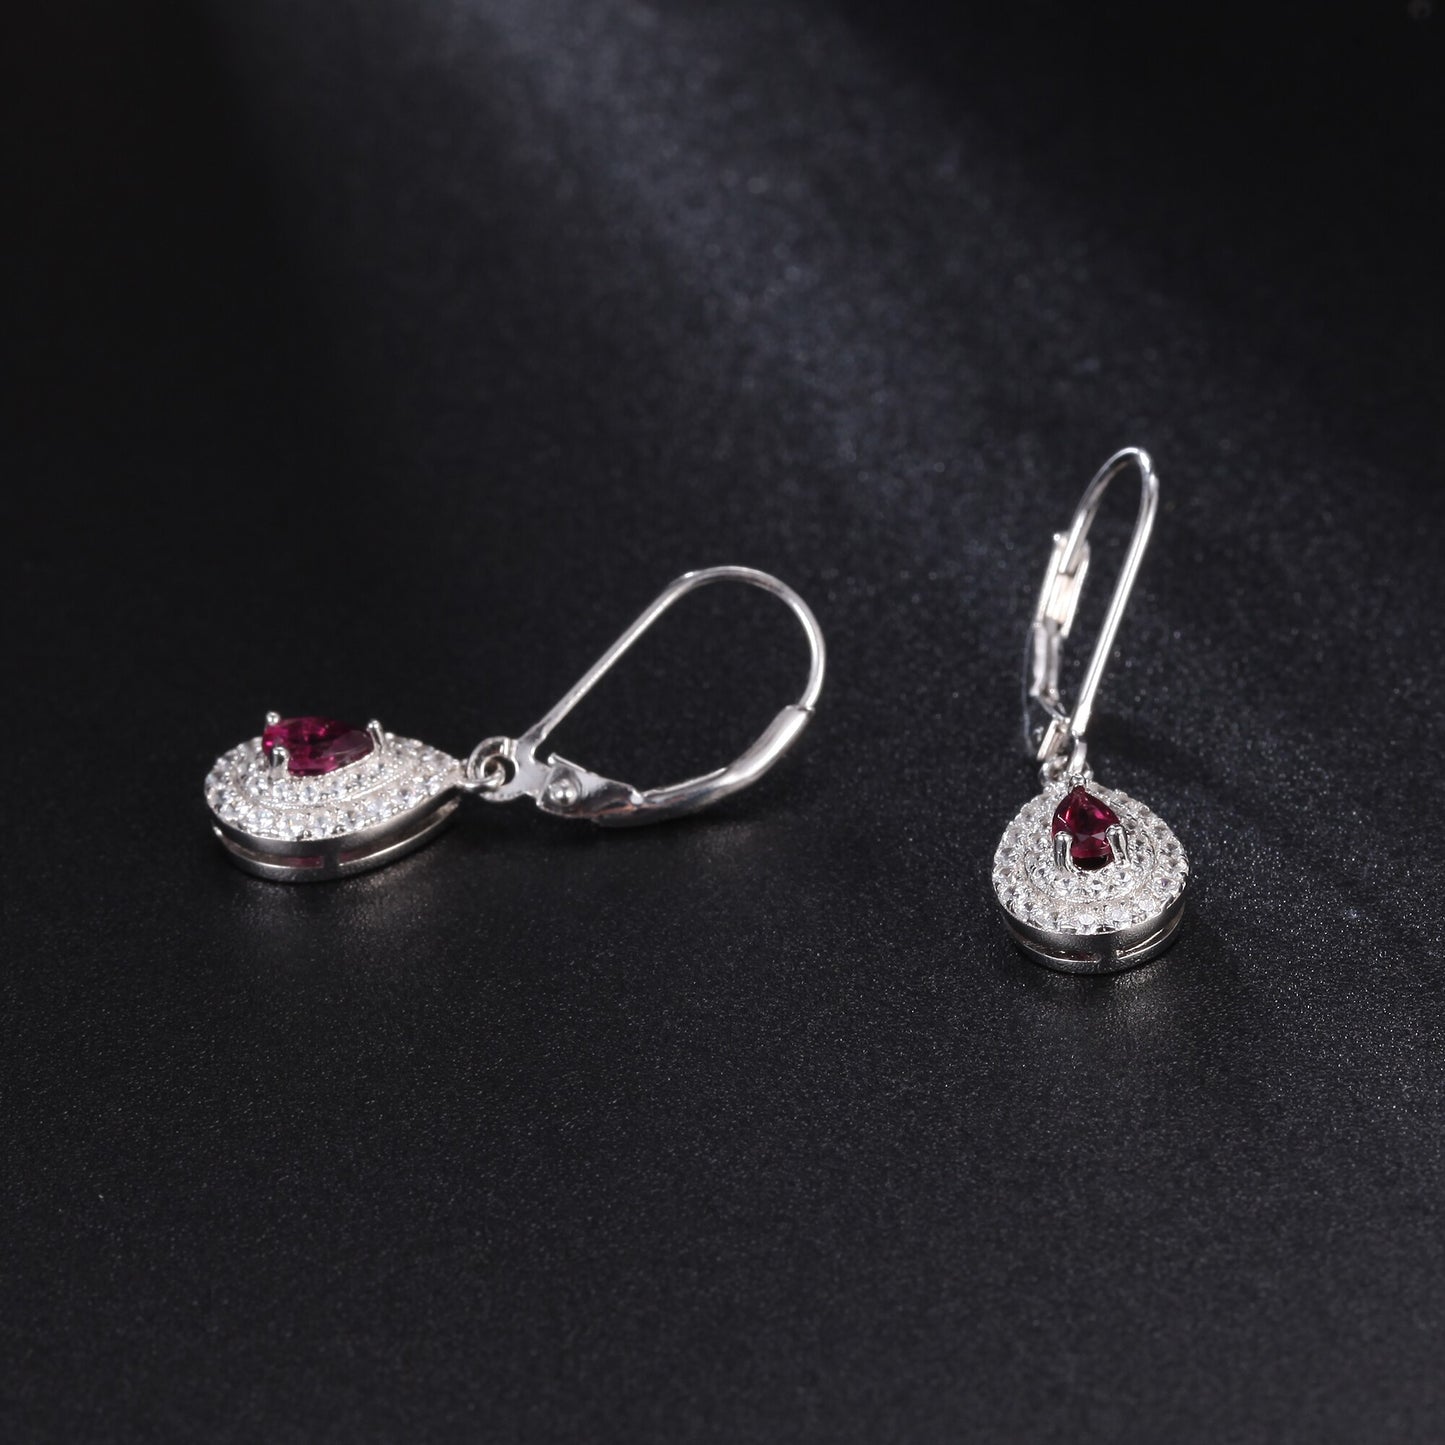 GEM&#39;S BALLET Dainty Gemstone Earrings 4x6mm Pear Shape Rhodolite Garnet Halo Drop Earrings in 925 Sterling Silver Gift For Her